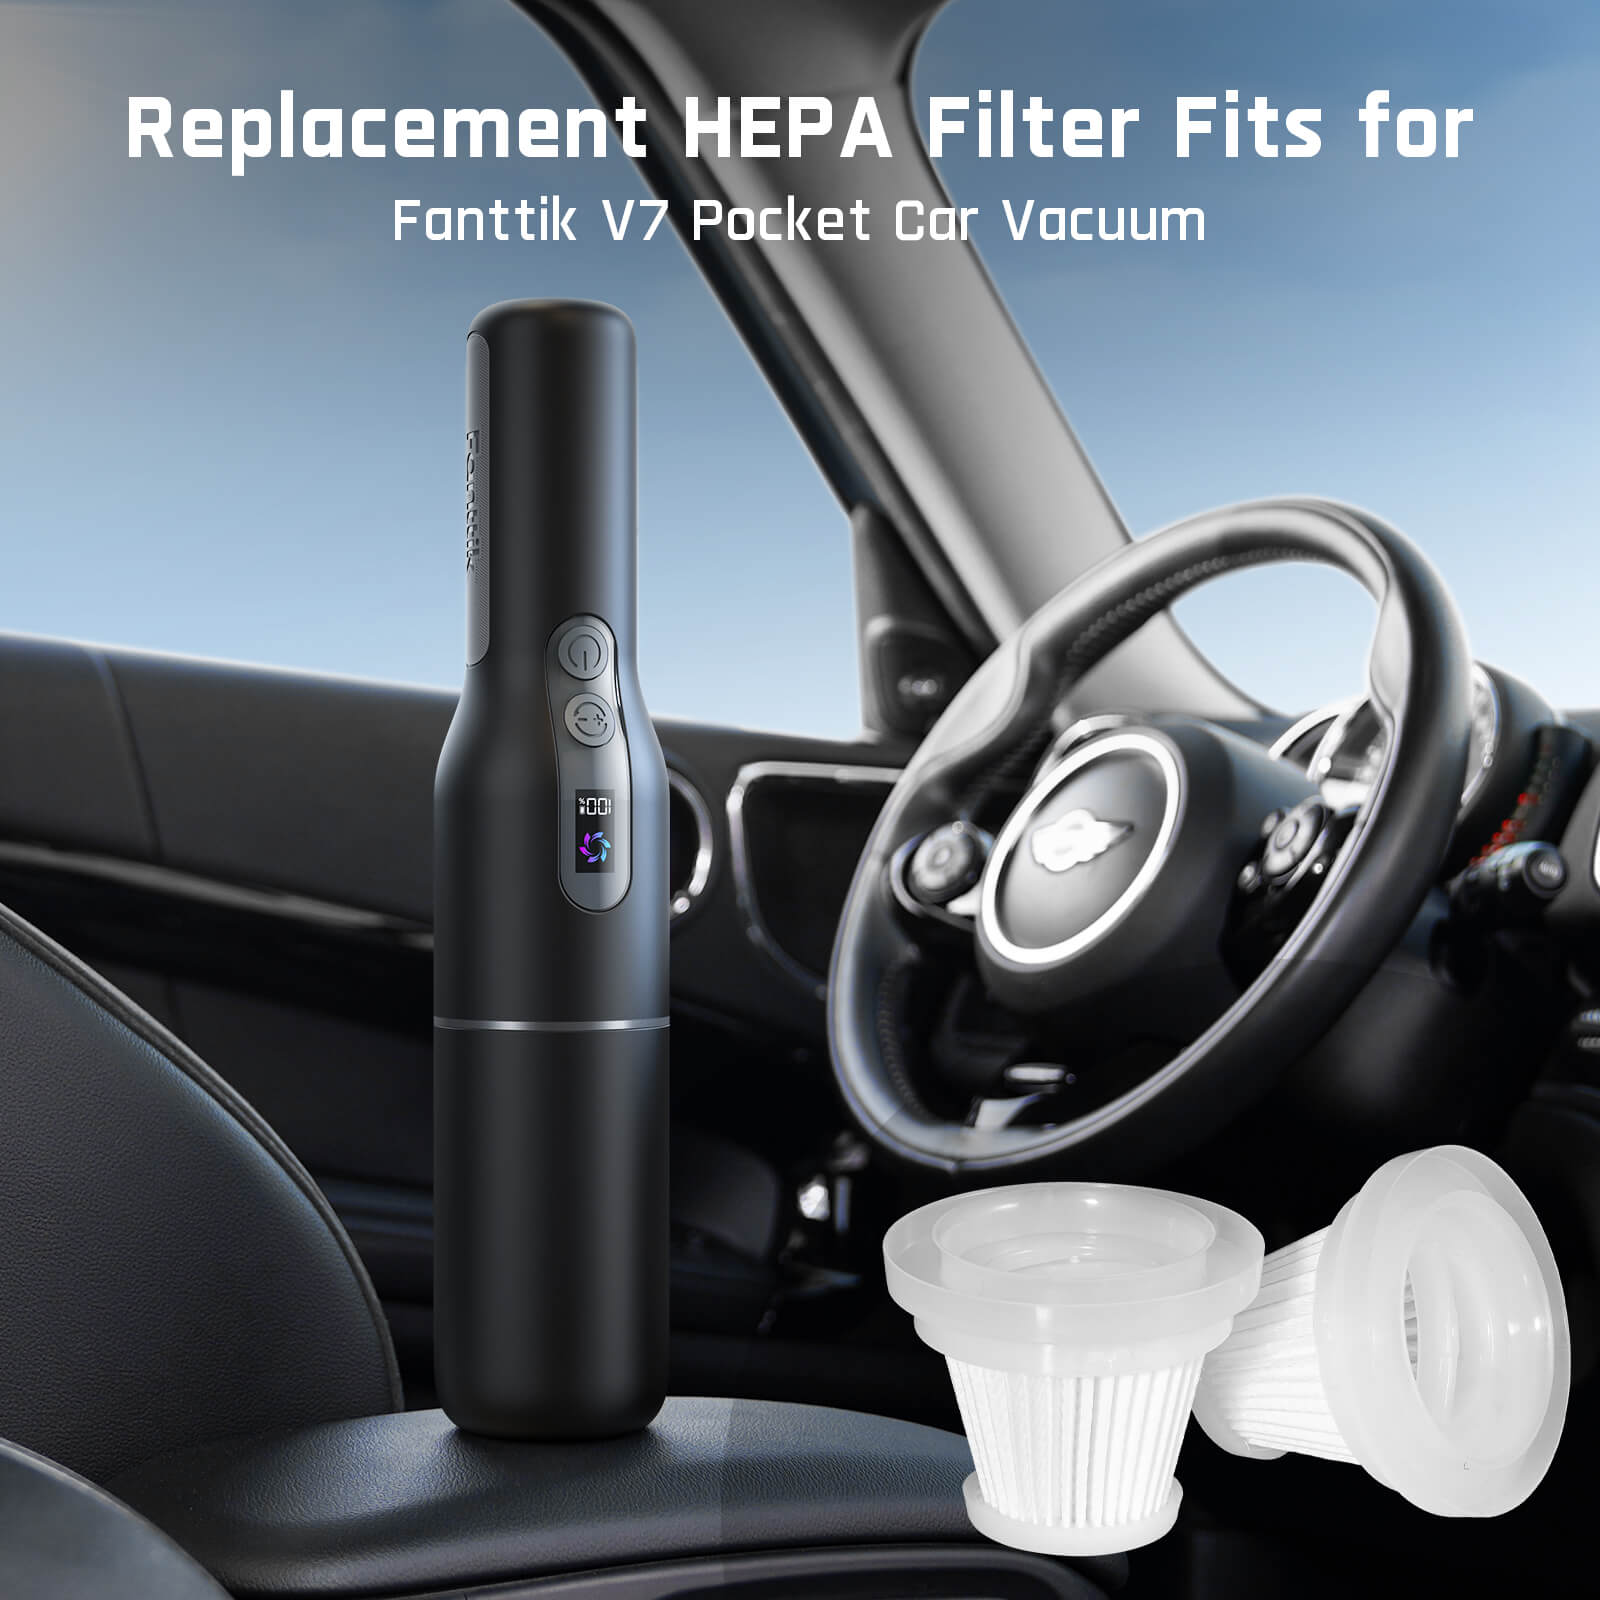 Fanttik 2-Pack Replacement HEPA Filter for V7 Pocket Car Vacuum